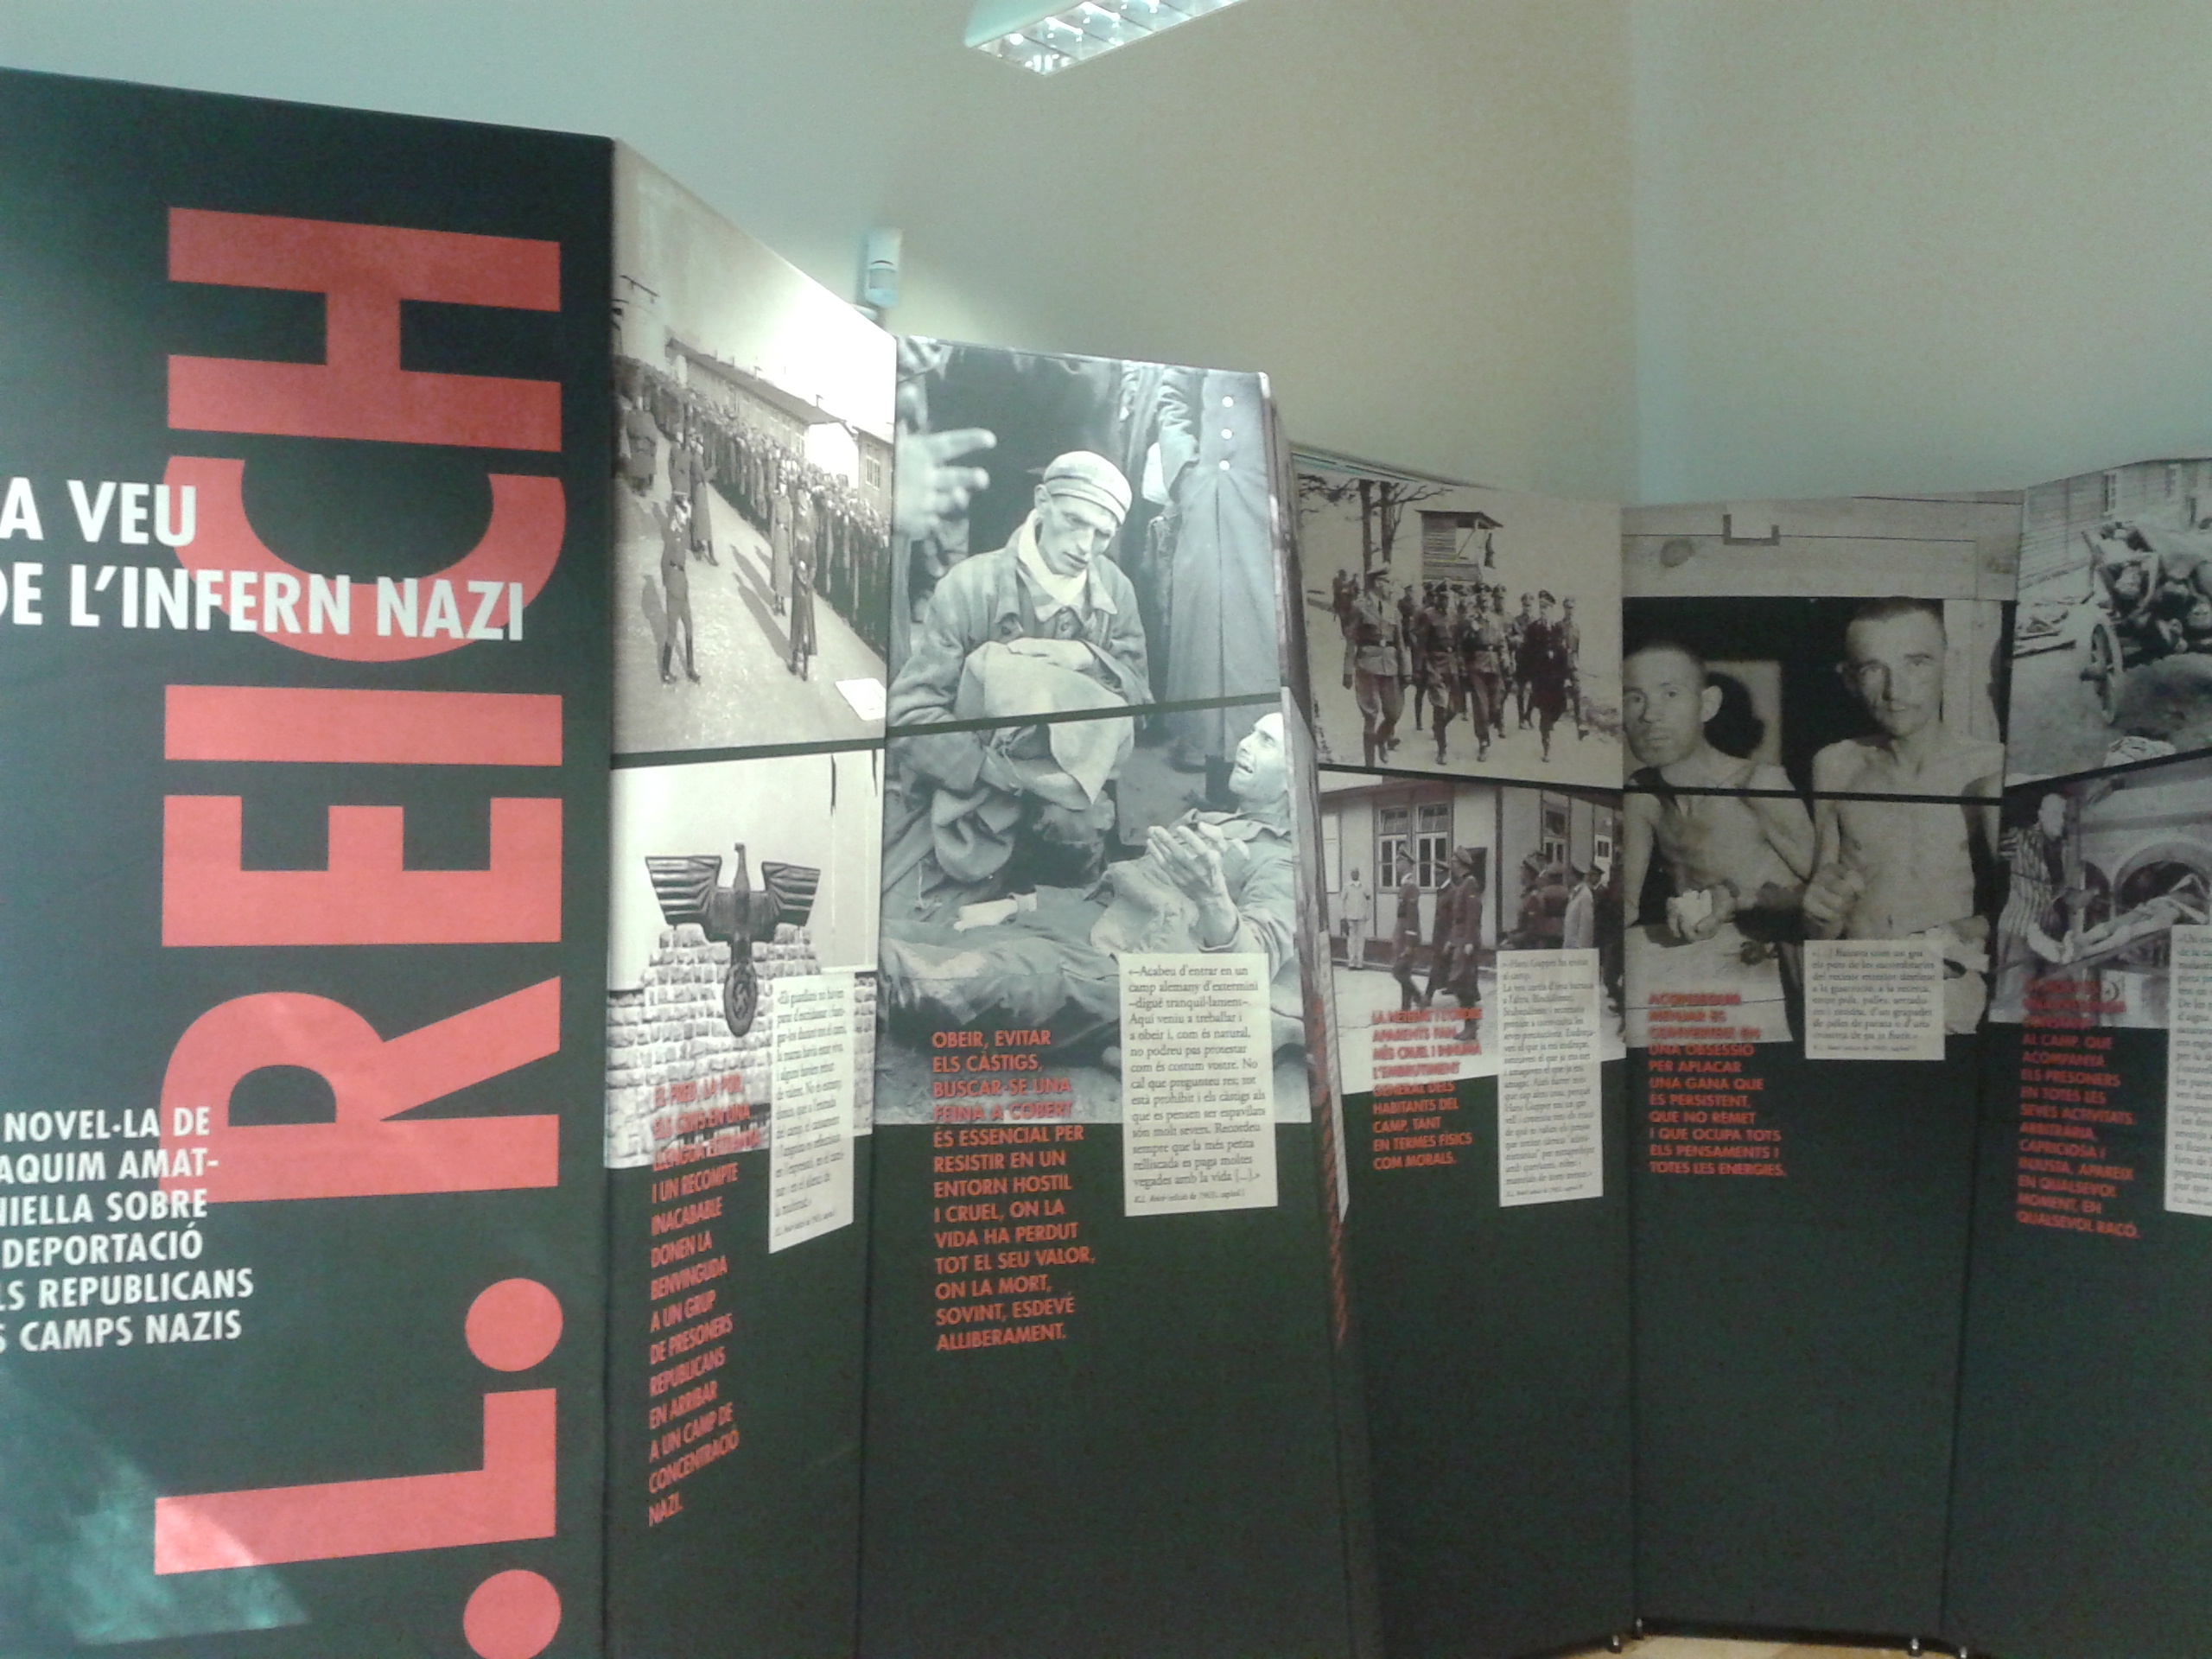 Castellar del Vallès se suma al centenari d’Amat, amb un conjunt d’activitats a l’entorn de l’exposició sobre “K.L. Reich”